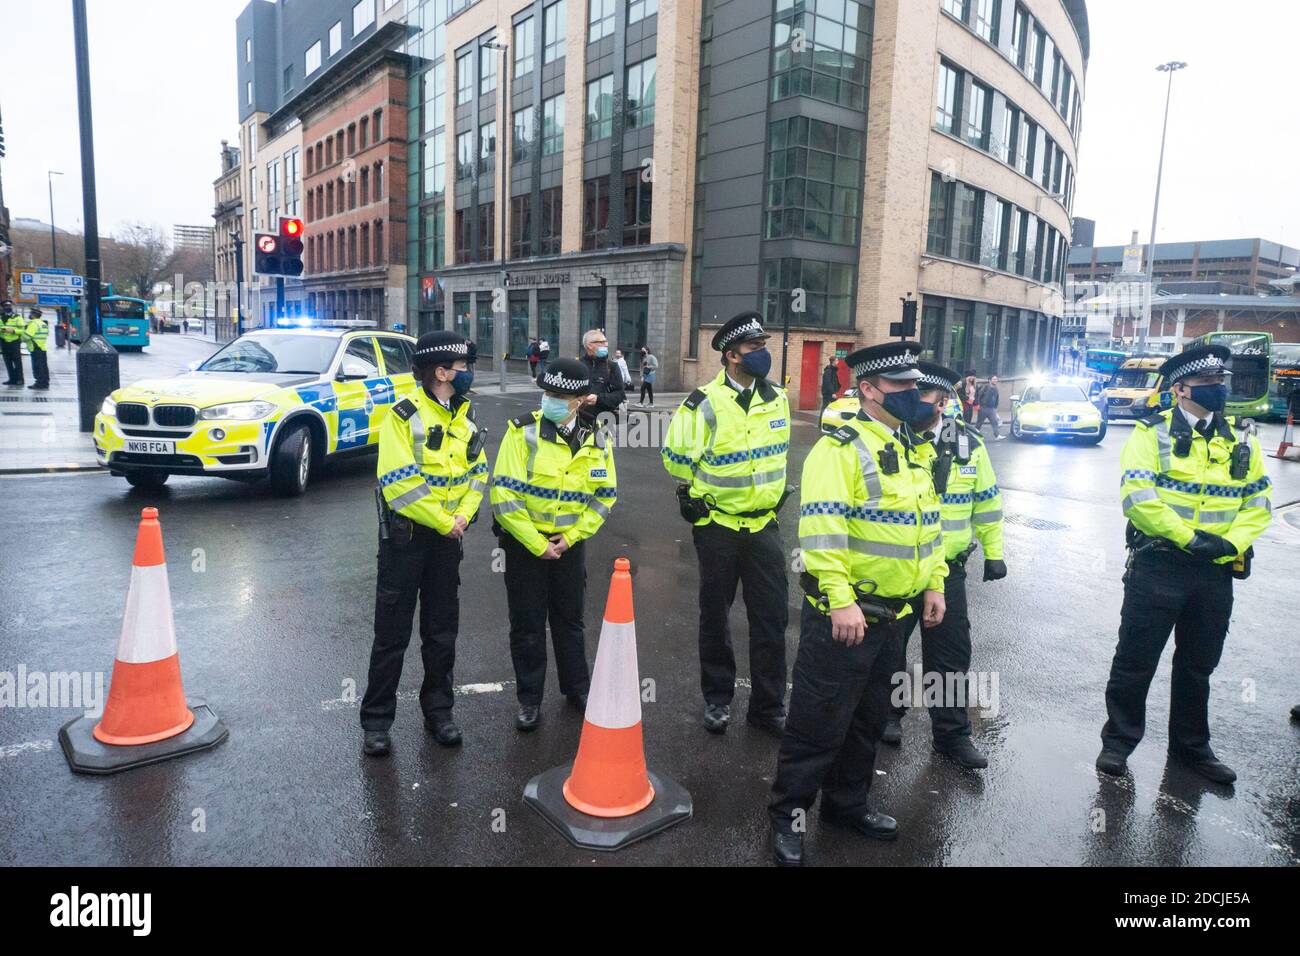 Victoria St, Liverpool, 21 novembre 2020 : des policiers se tiennent à l'intersection avec Crosarth St pendant une marche de protestation contre le confinement Banque D'Images